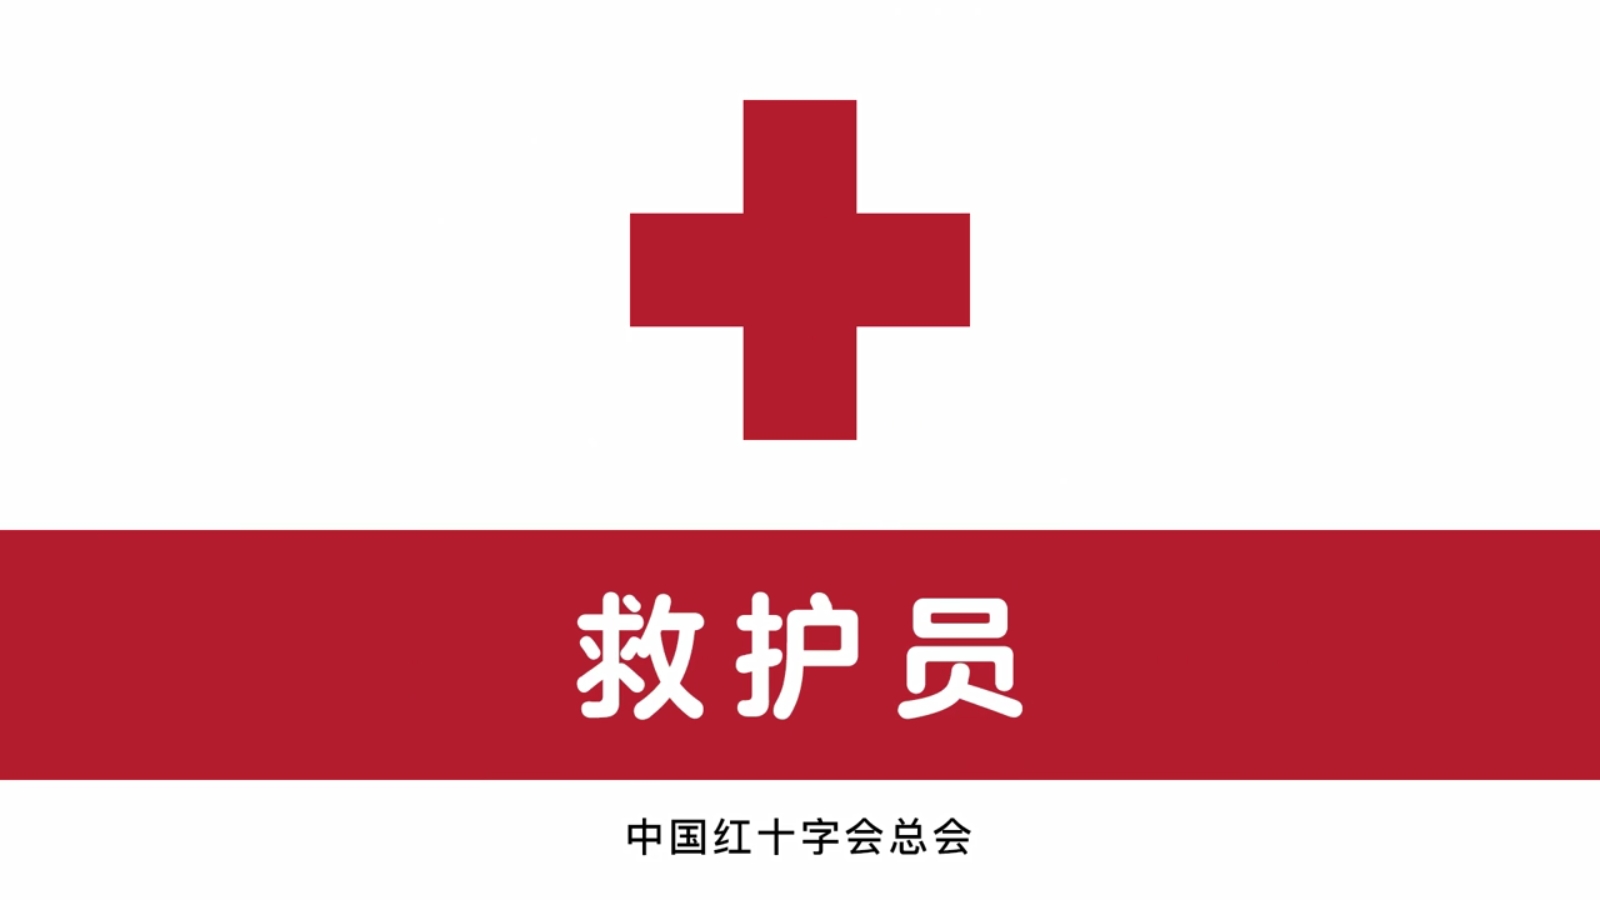 1.红十字运动